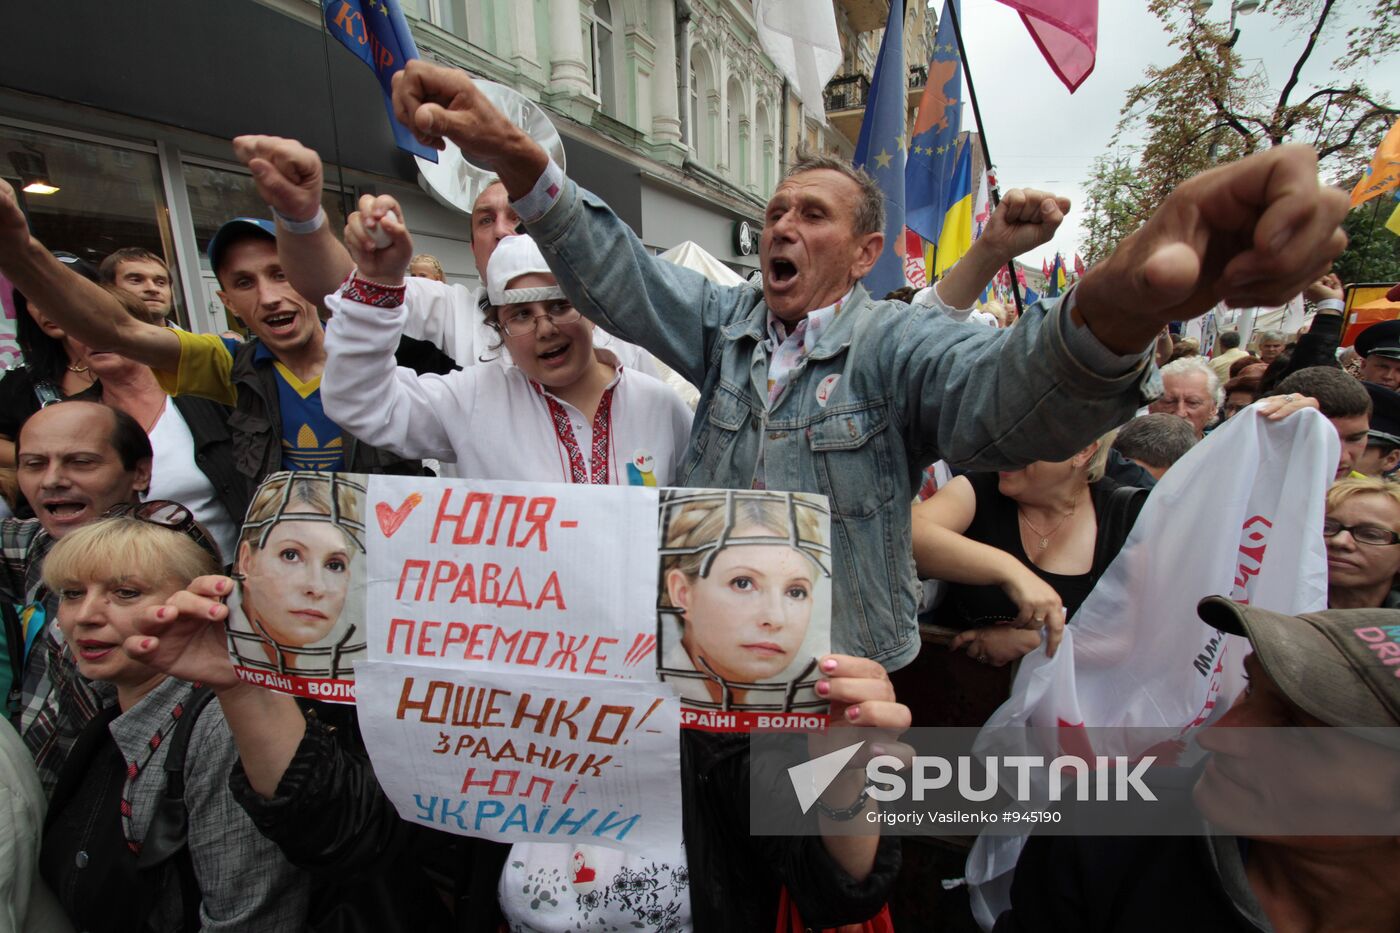 Supporters of former Ukrainian prime minister Yulia Tymoshenko